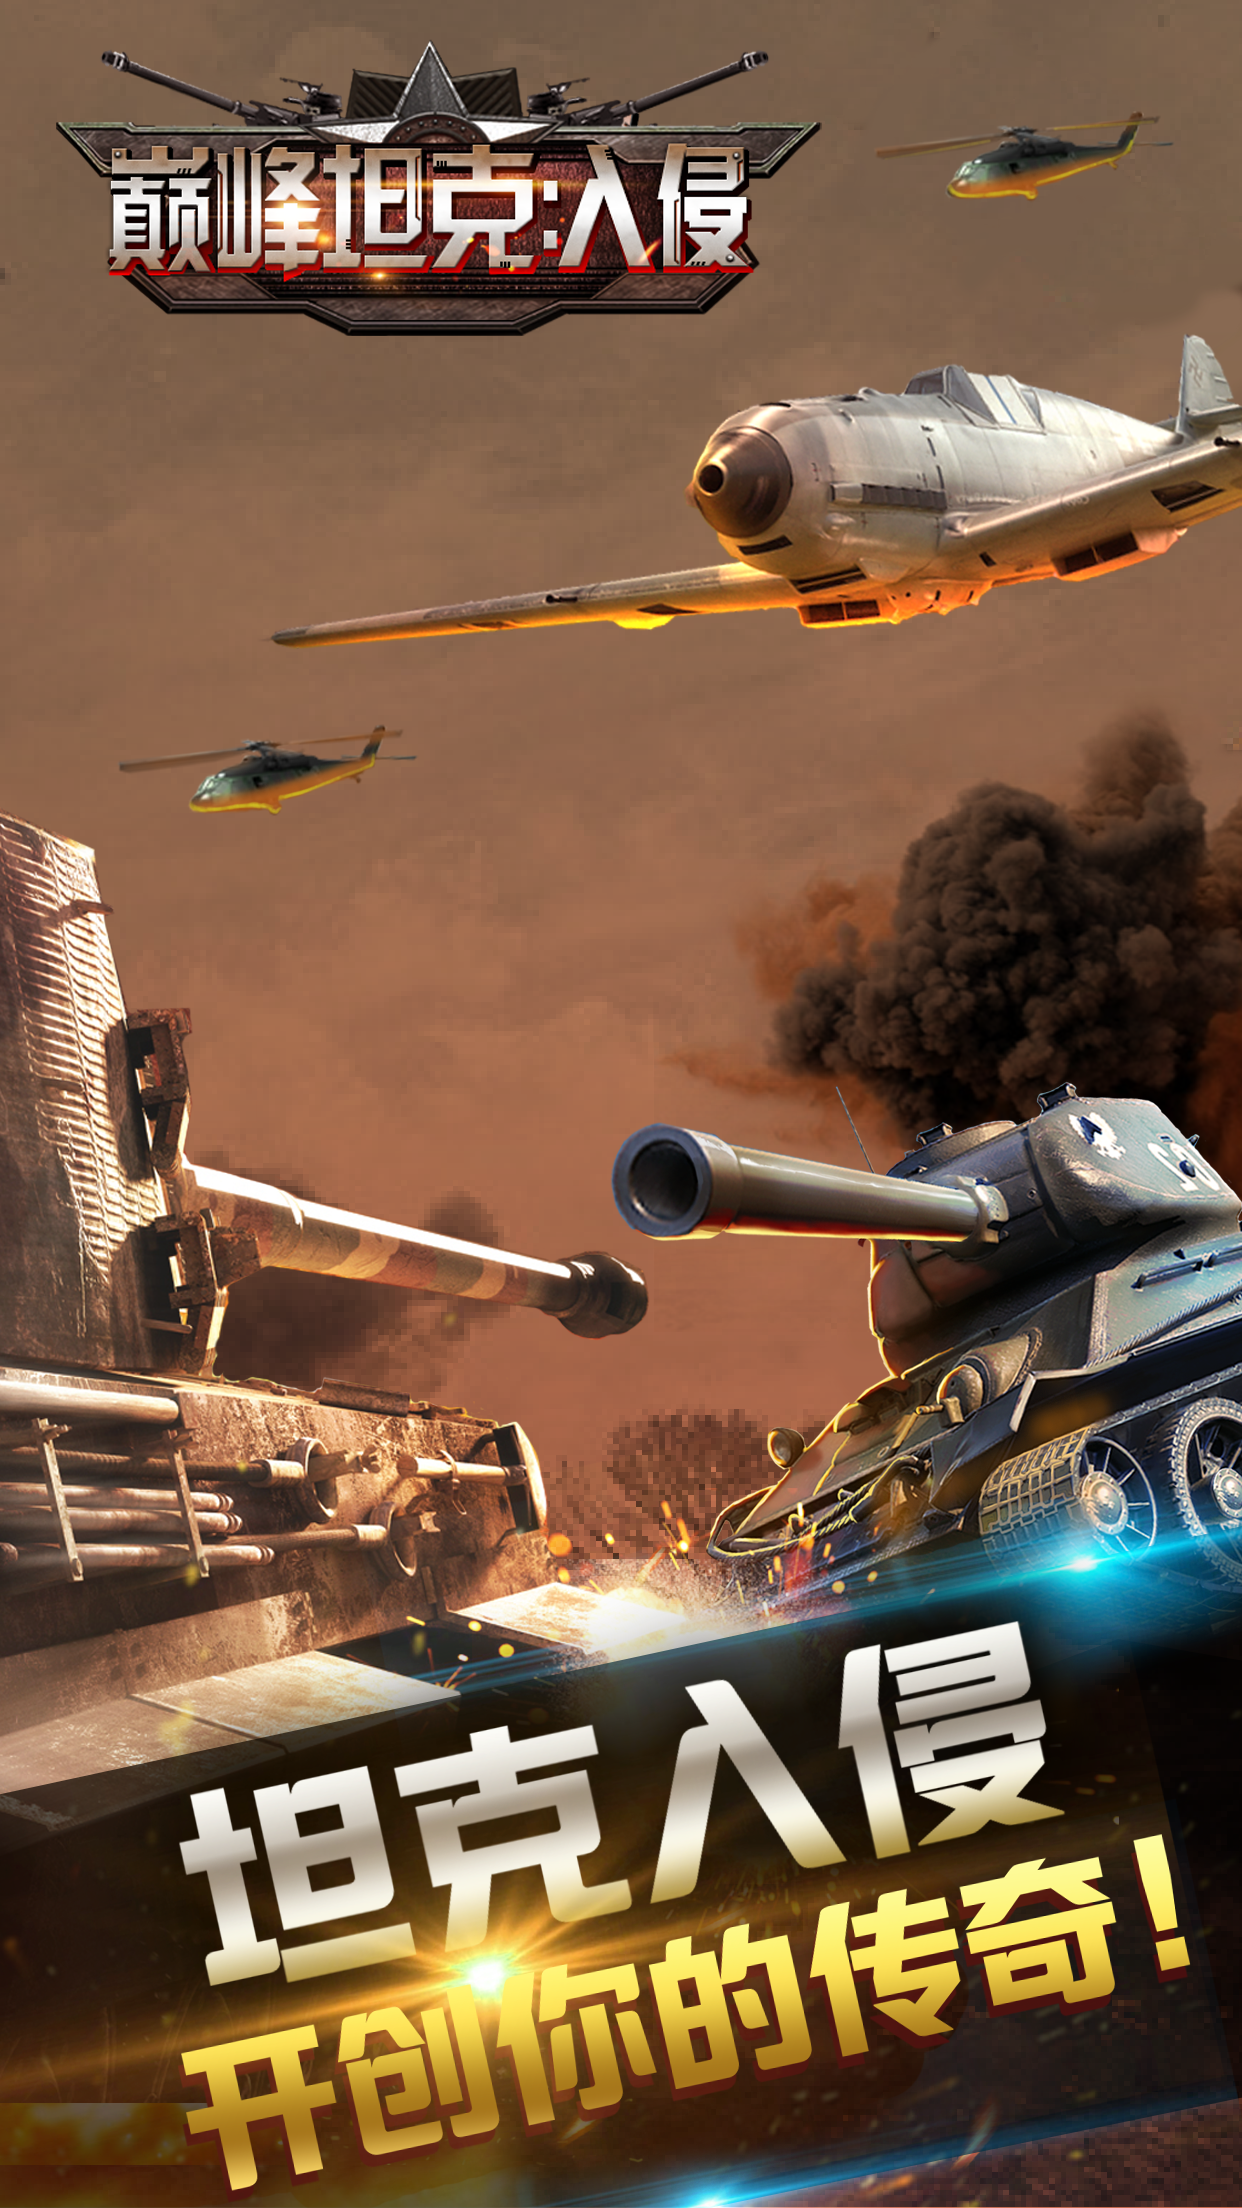 Screenshot 1 of Chiến tranh xe tăng: Cuộc xâm lược 1.3.1